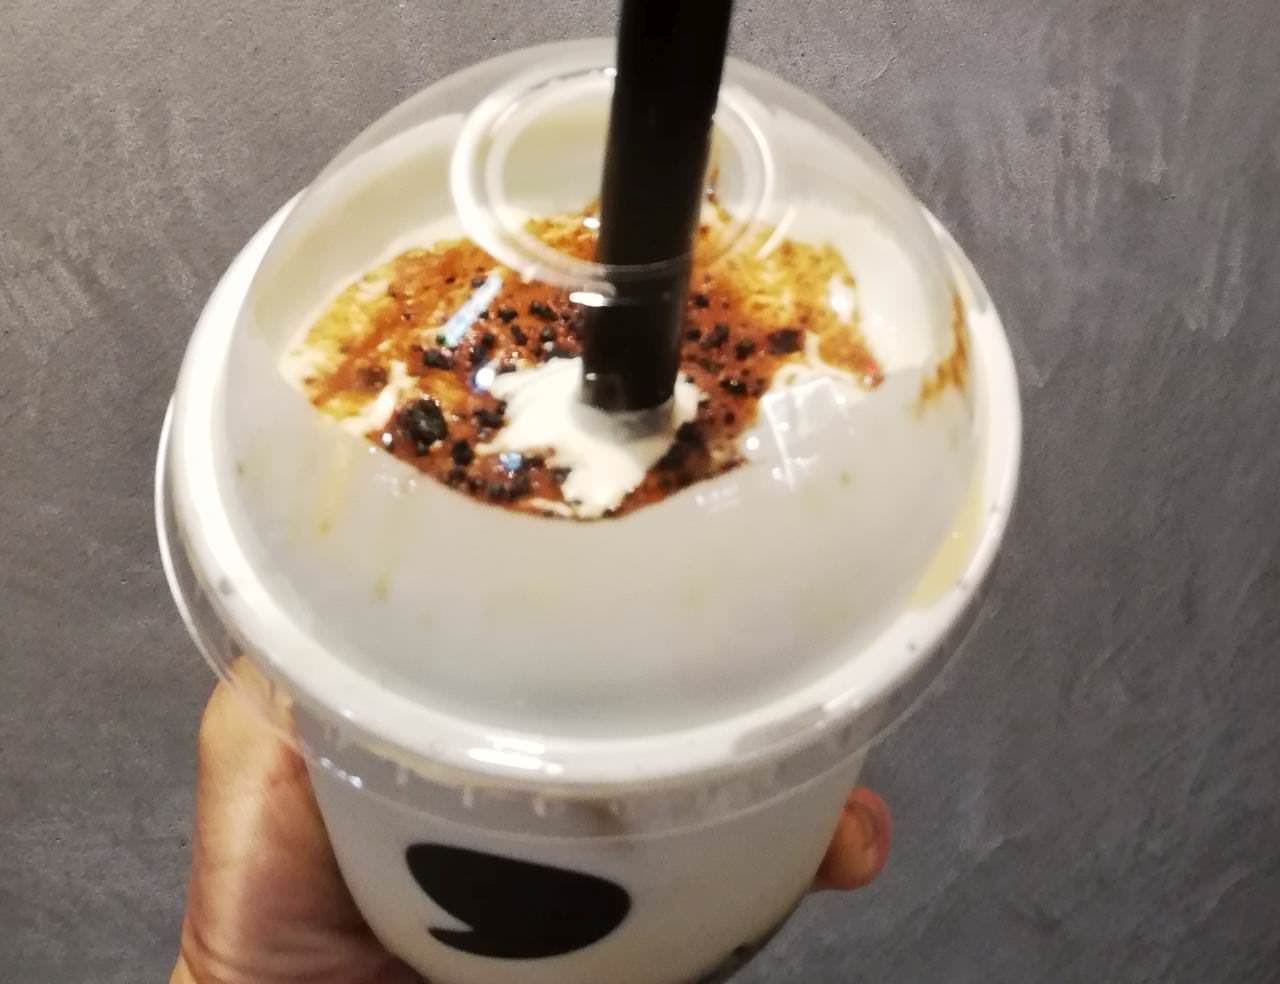 "Comma tea" charred brown sugar latte